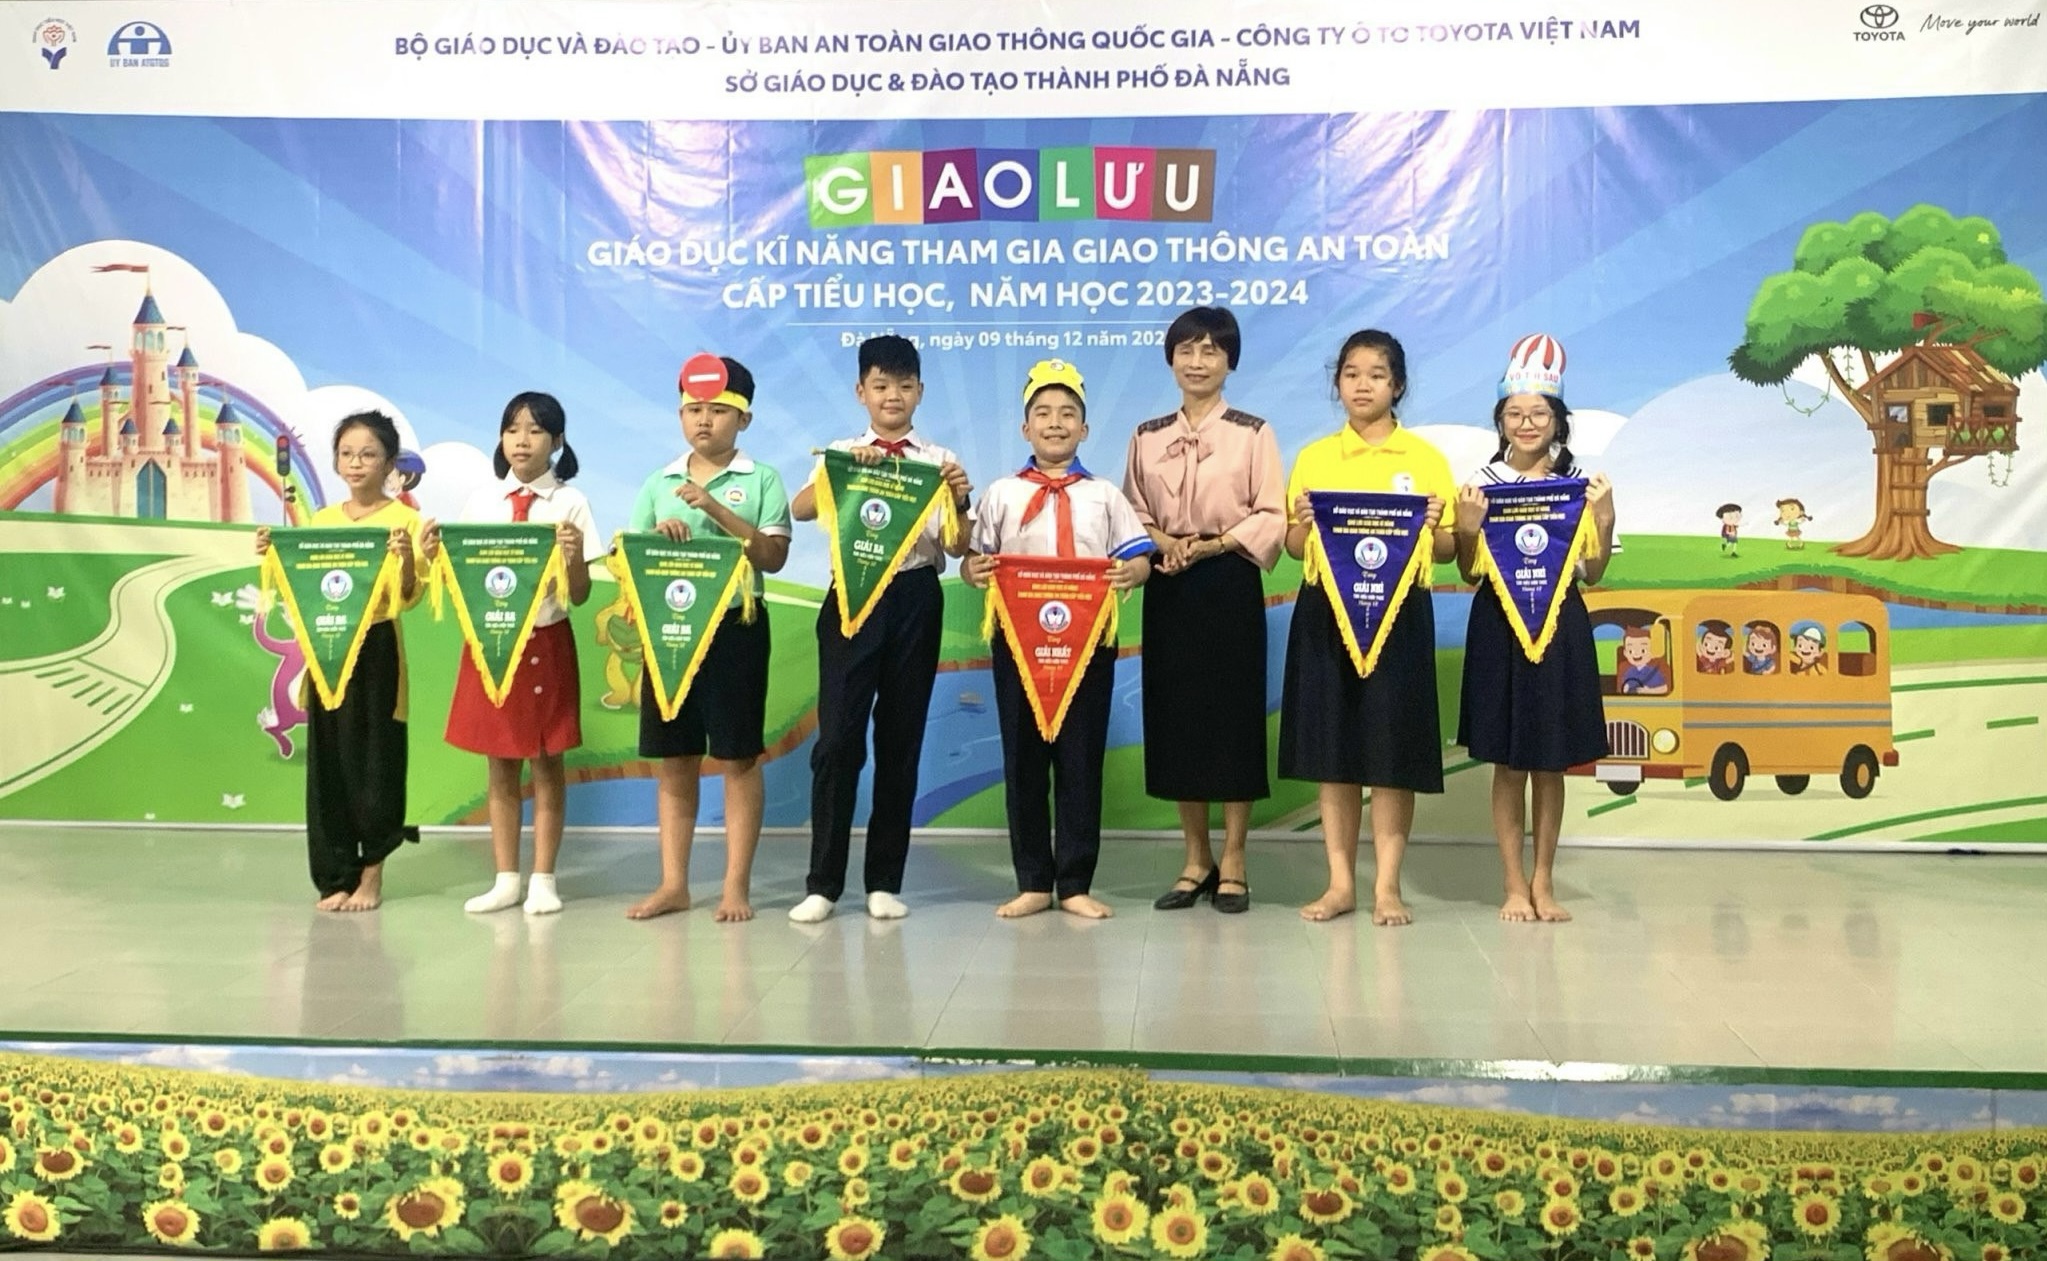 Toyota Việt Nam triển khai chương trình Toyota cùng em học an toàn giao thông năm học 2023 - 2024